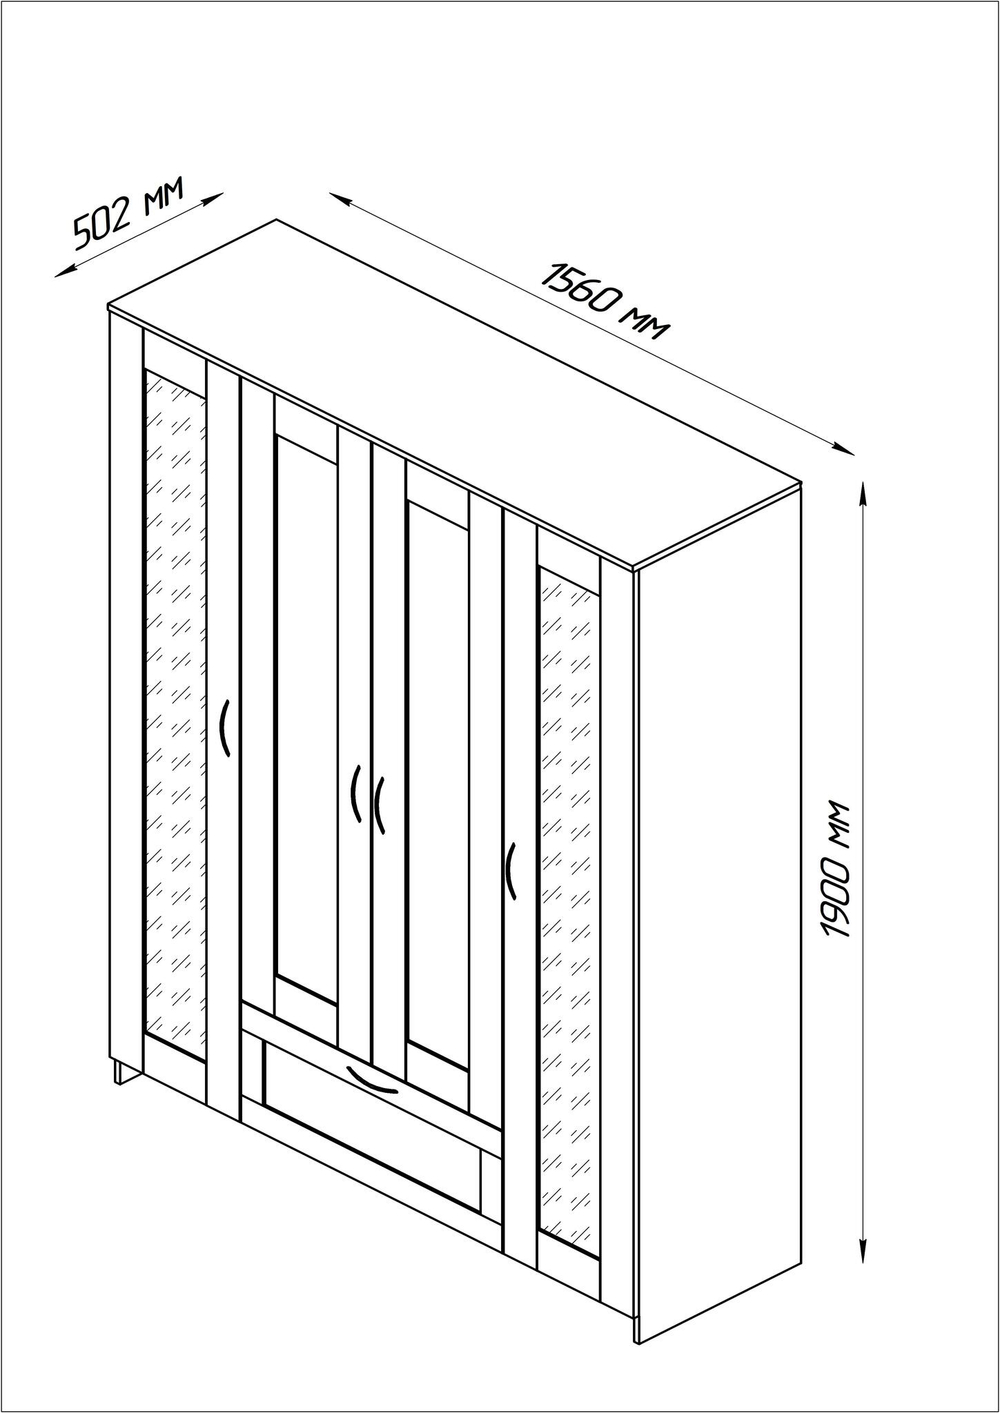 Шкаф СИРИУС комбинированный 4 двери (2 зеркала) и 1 ящик (сонома)